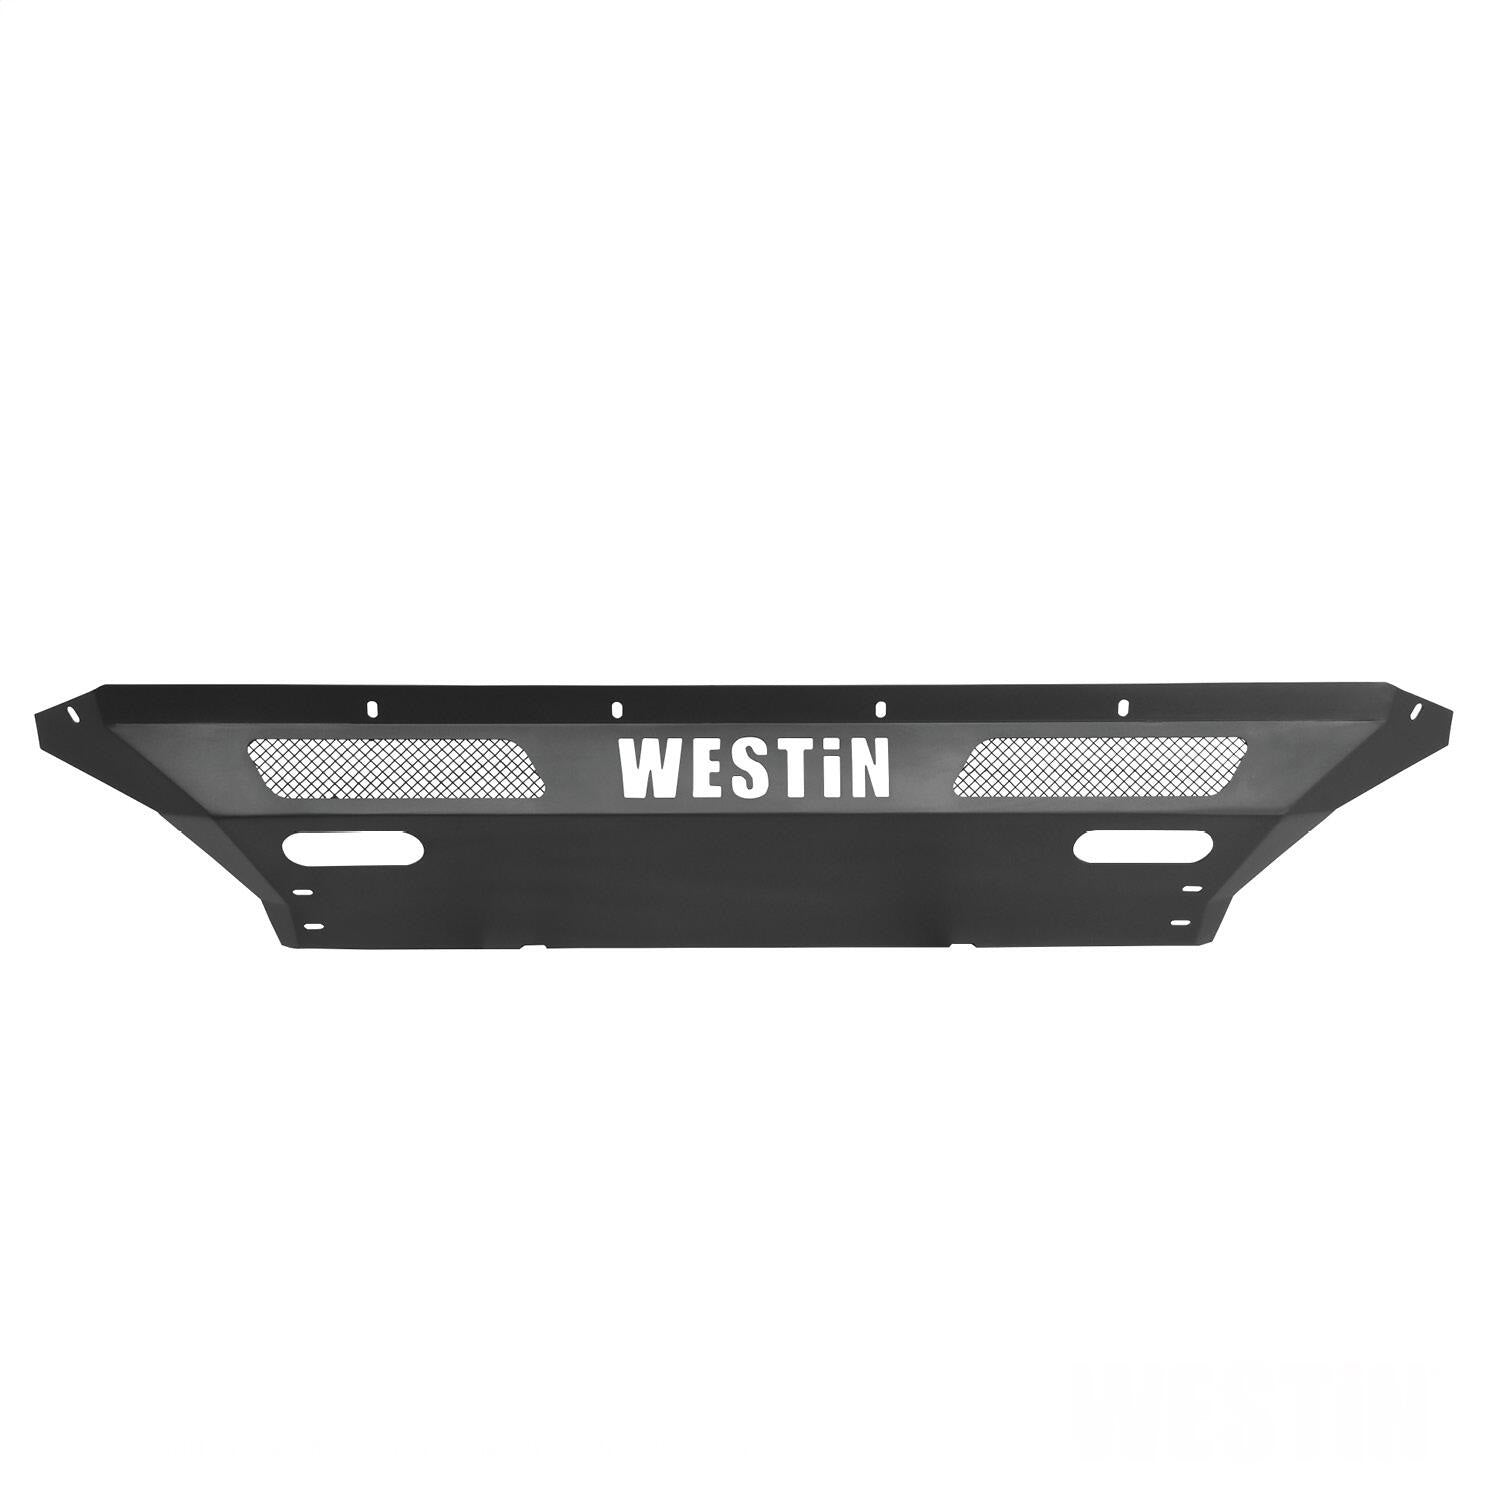 Westin 58-41225 Pro-Mod Front Bumper